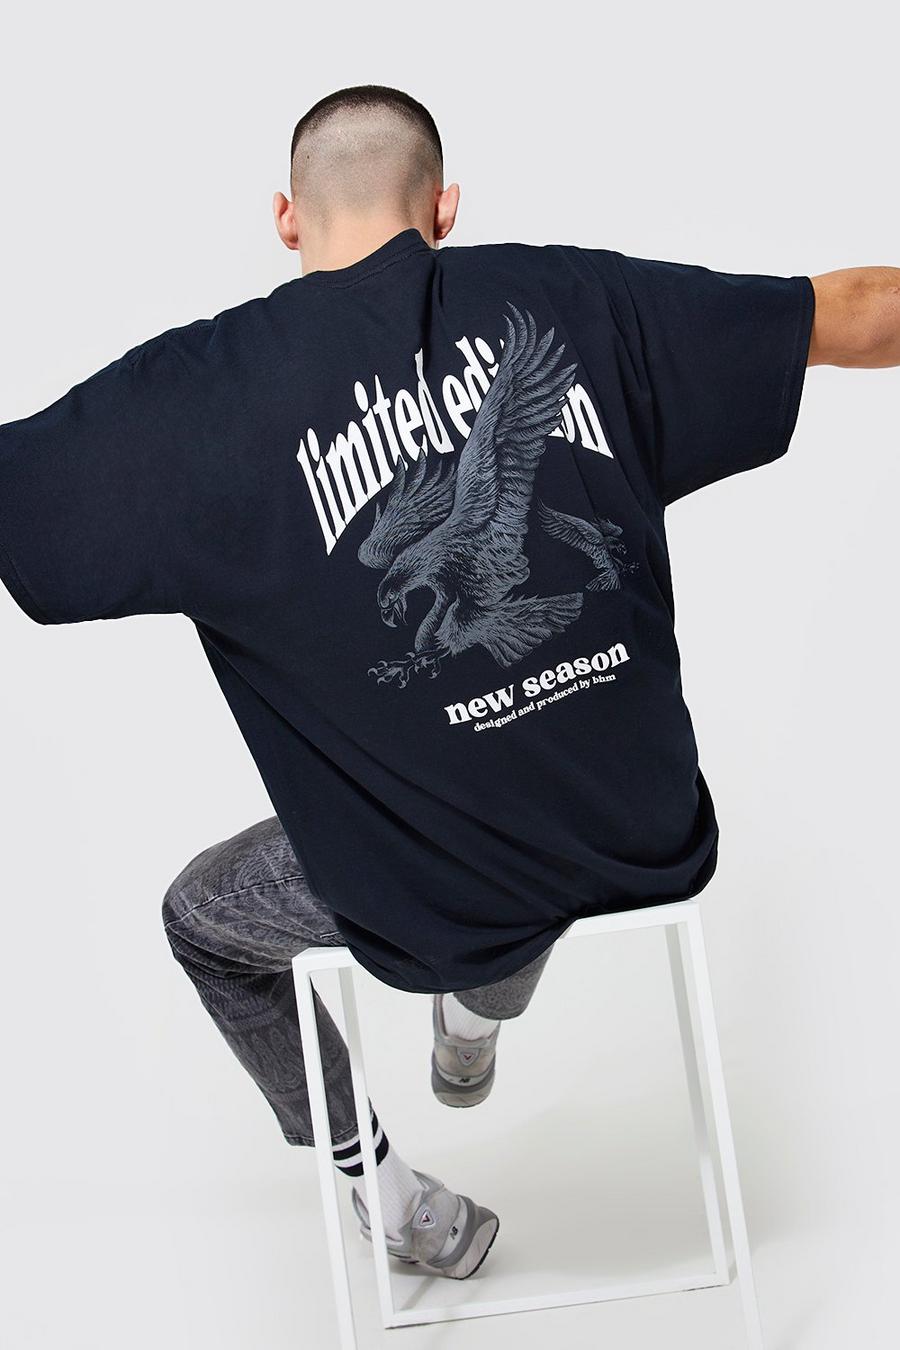 Camiseta oversize con estampado Limited Edition y águila, Black nero